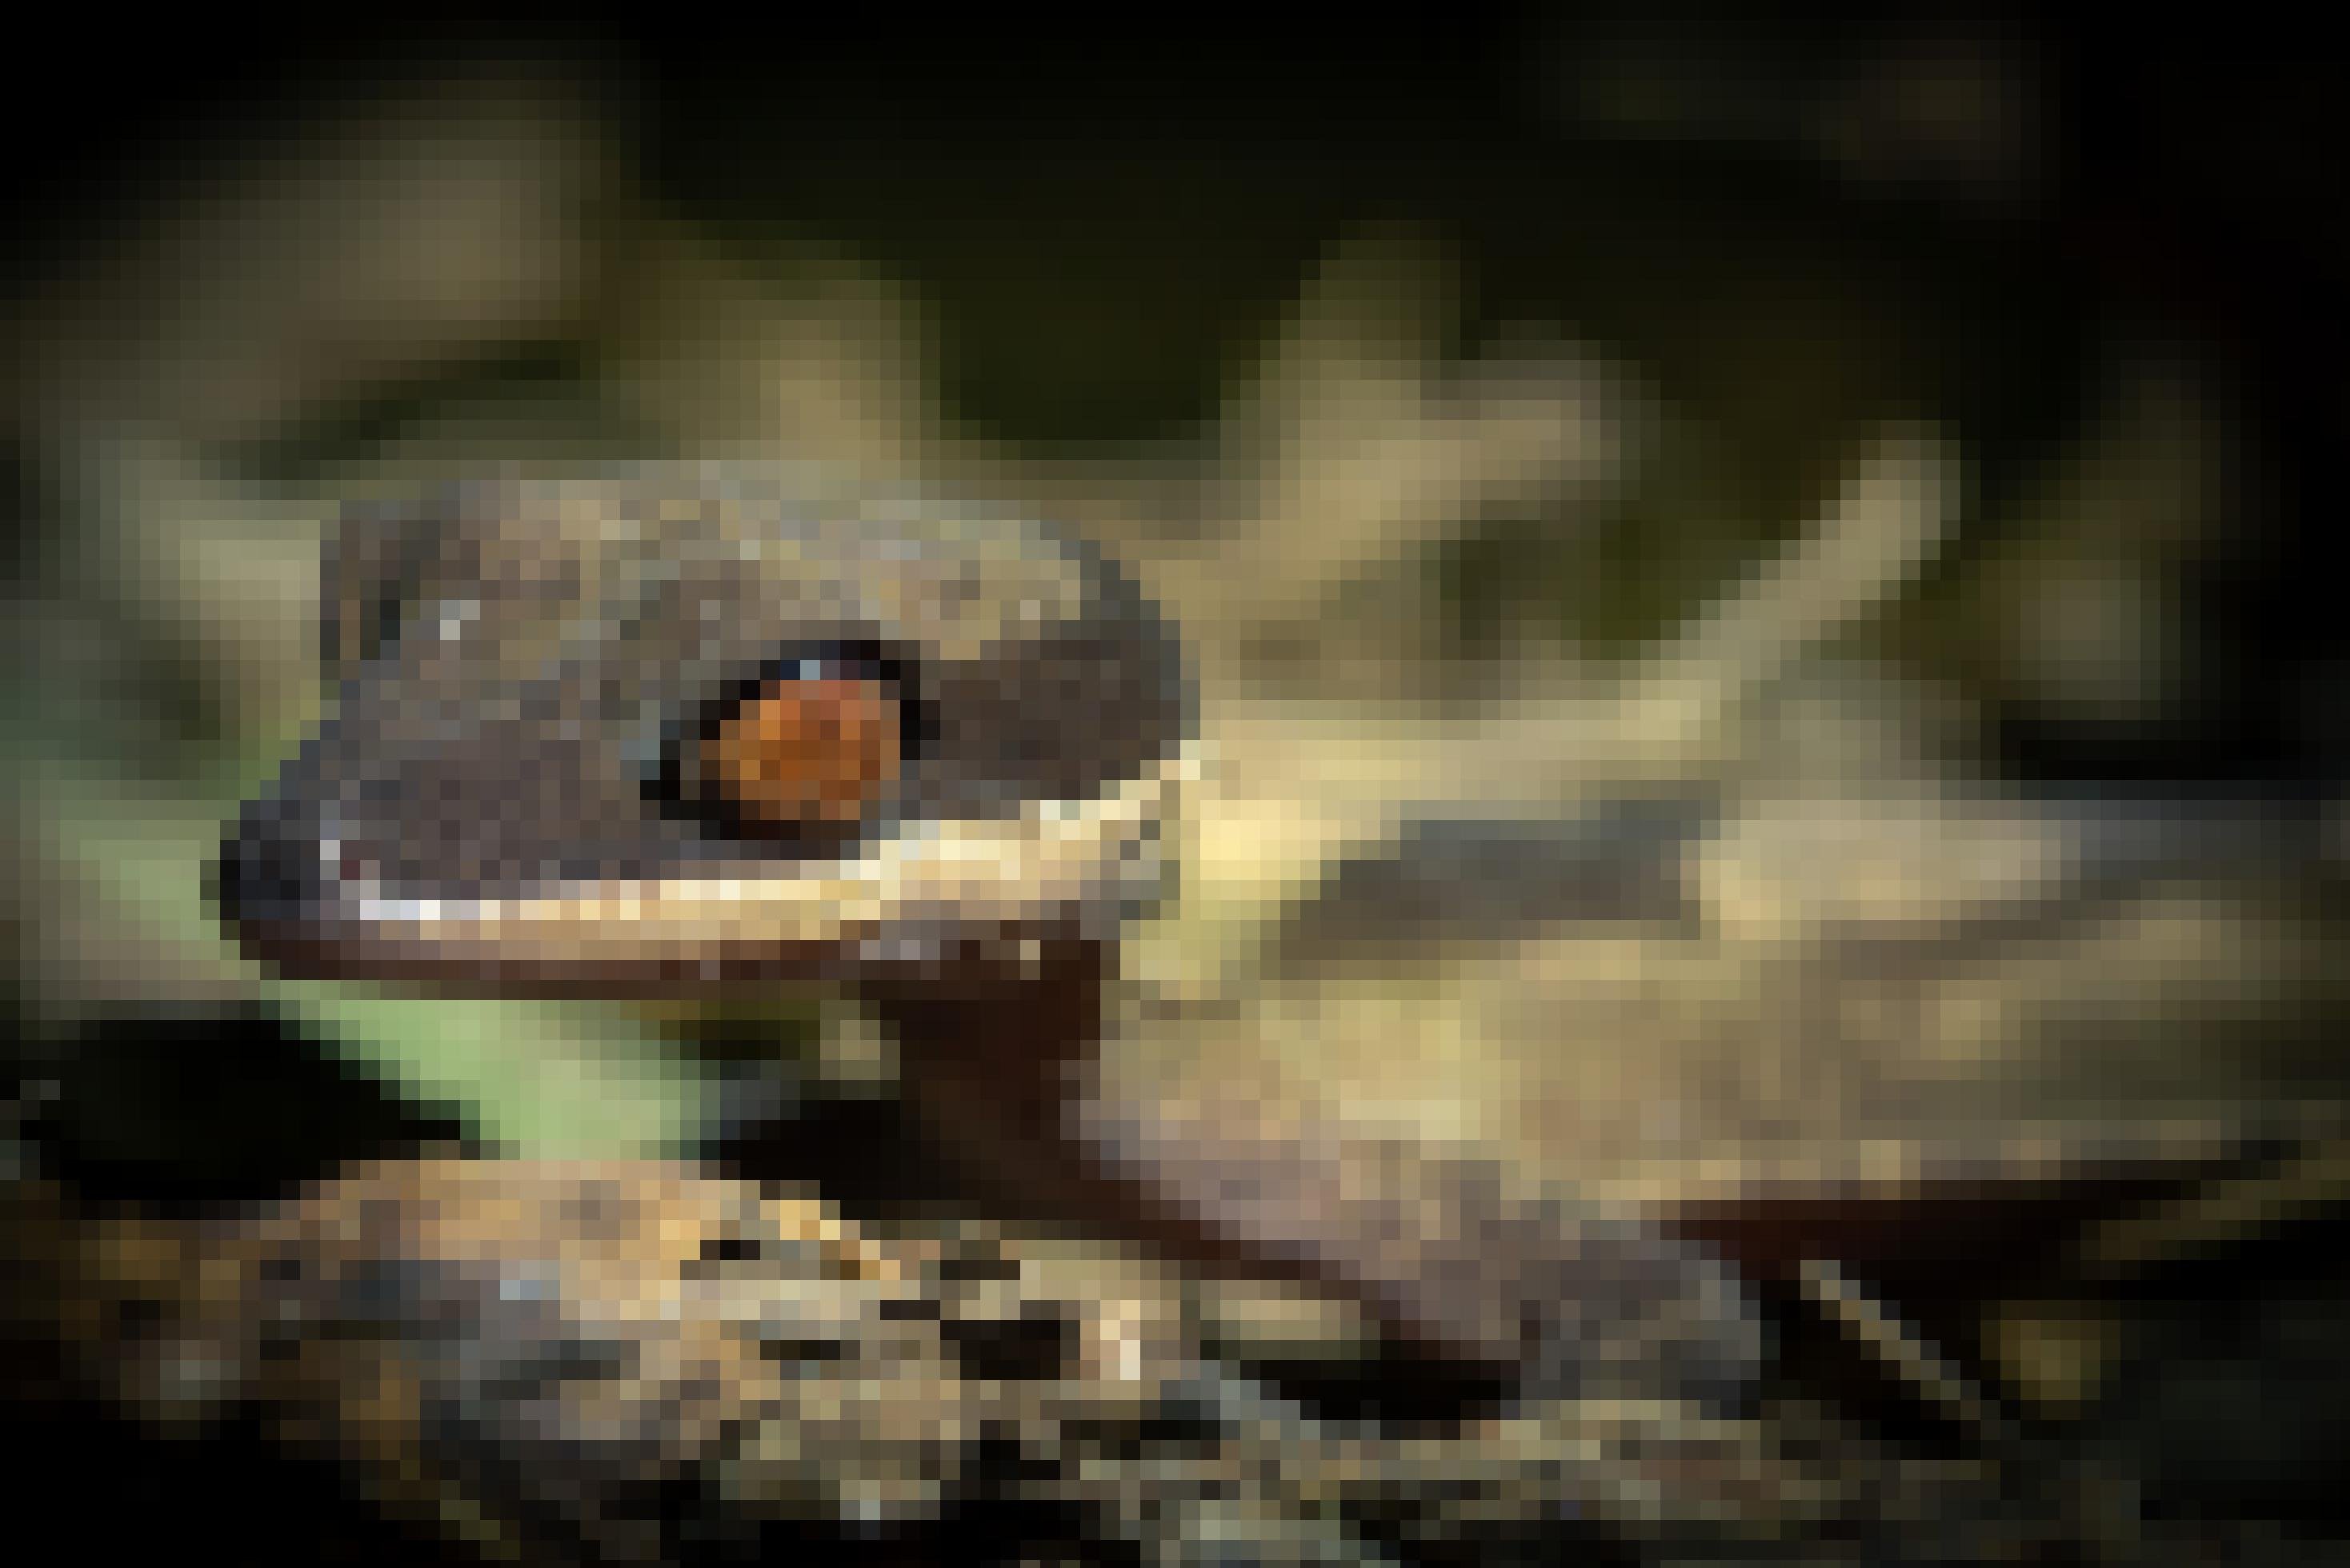 Ein Gecko mit dunkelgrauem Körper und großen orangefarbenen Augen.